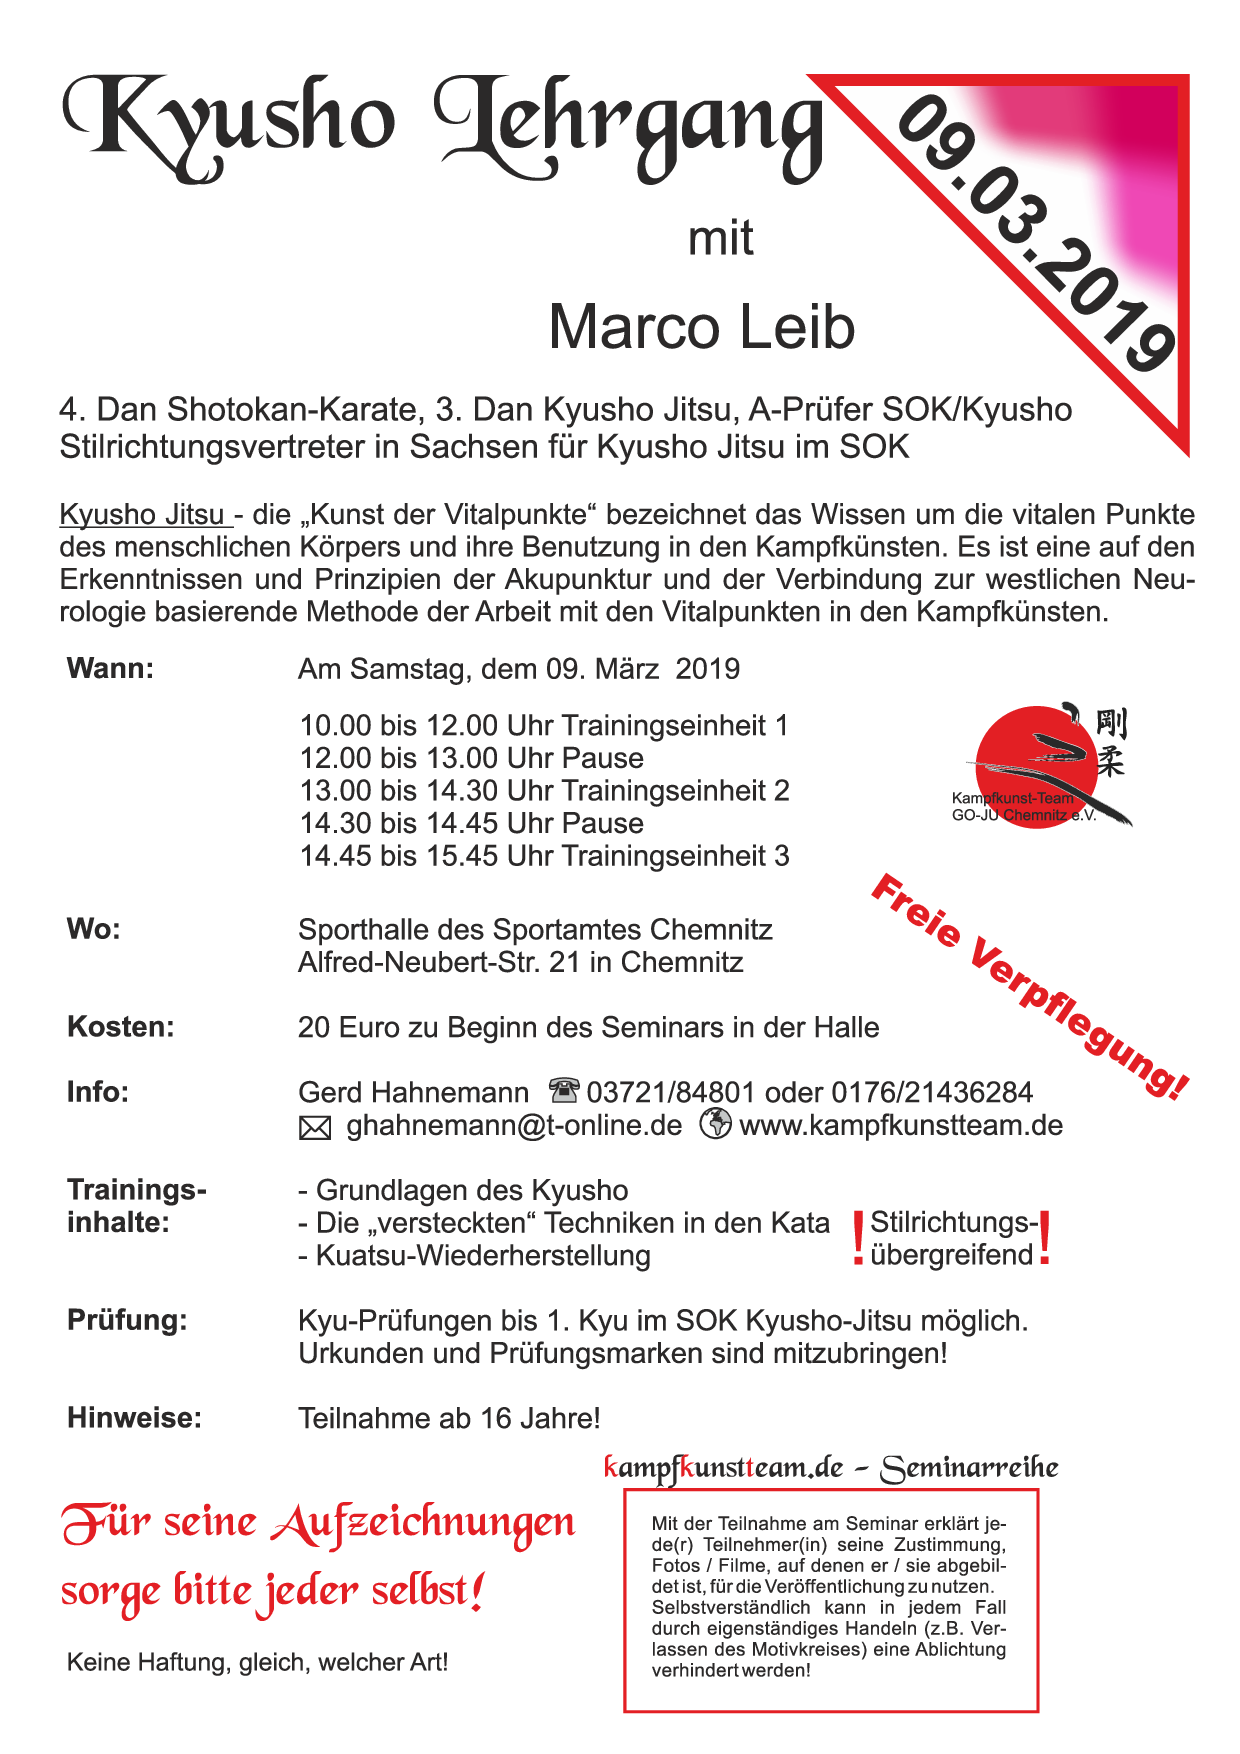 2019 03 09 Seminar1 Marco Leib 2019